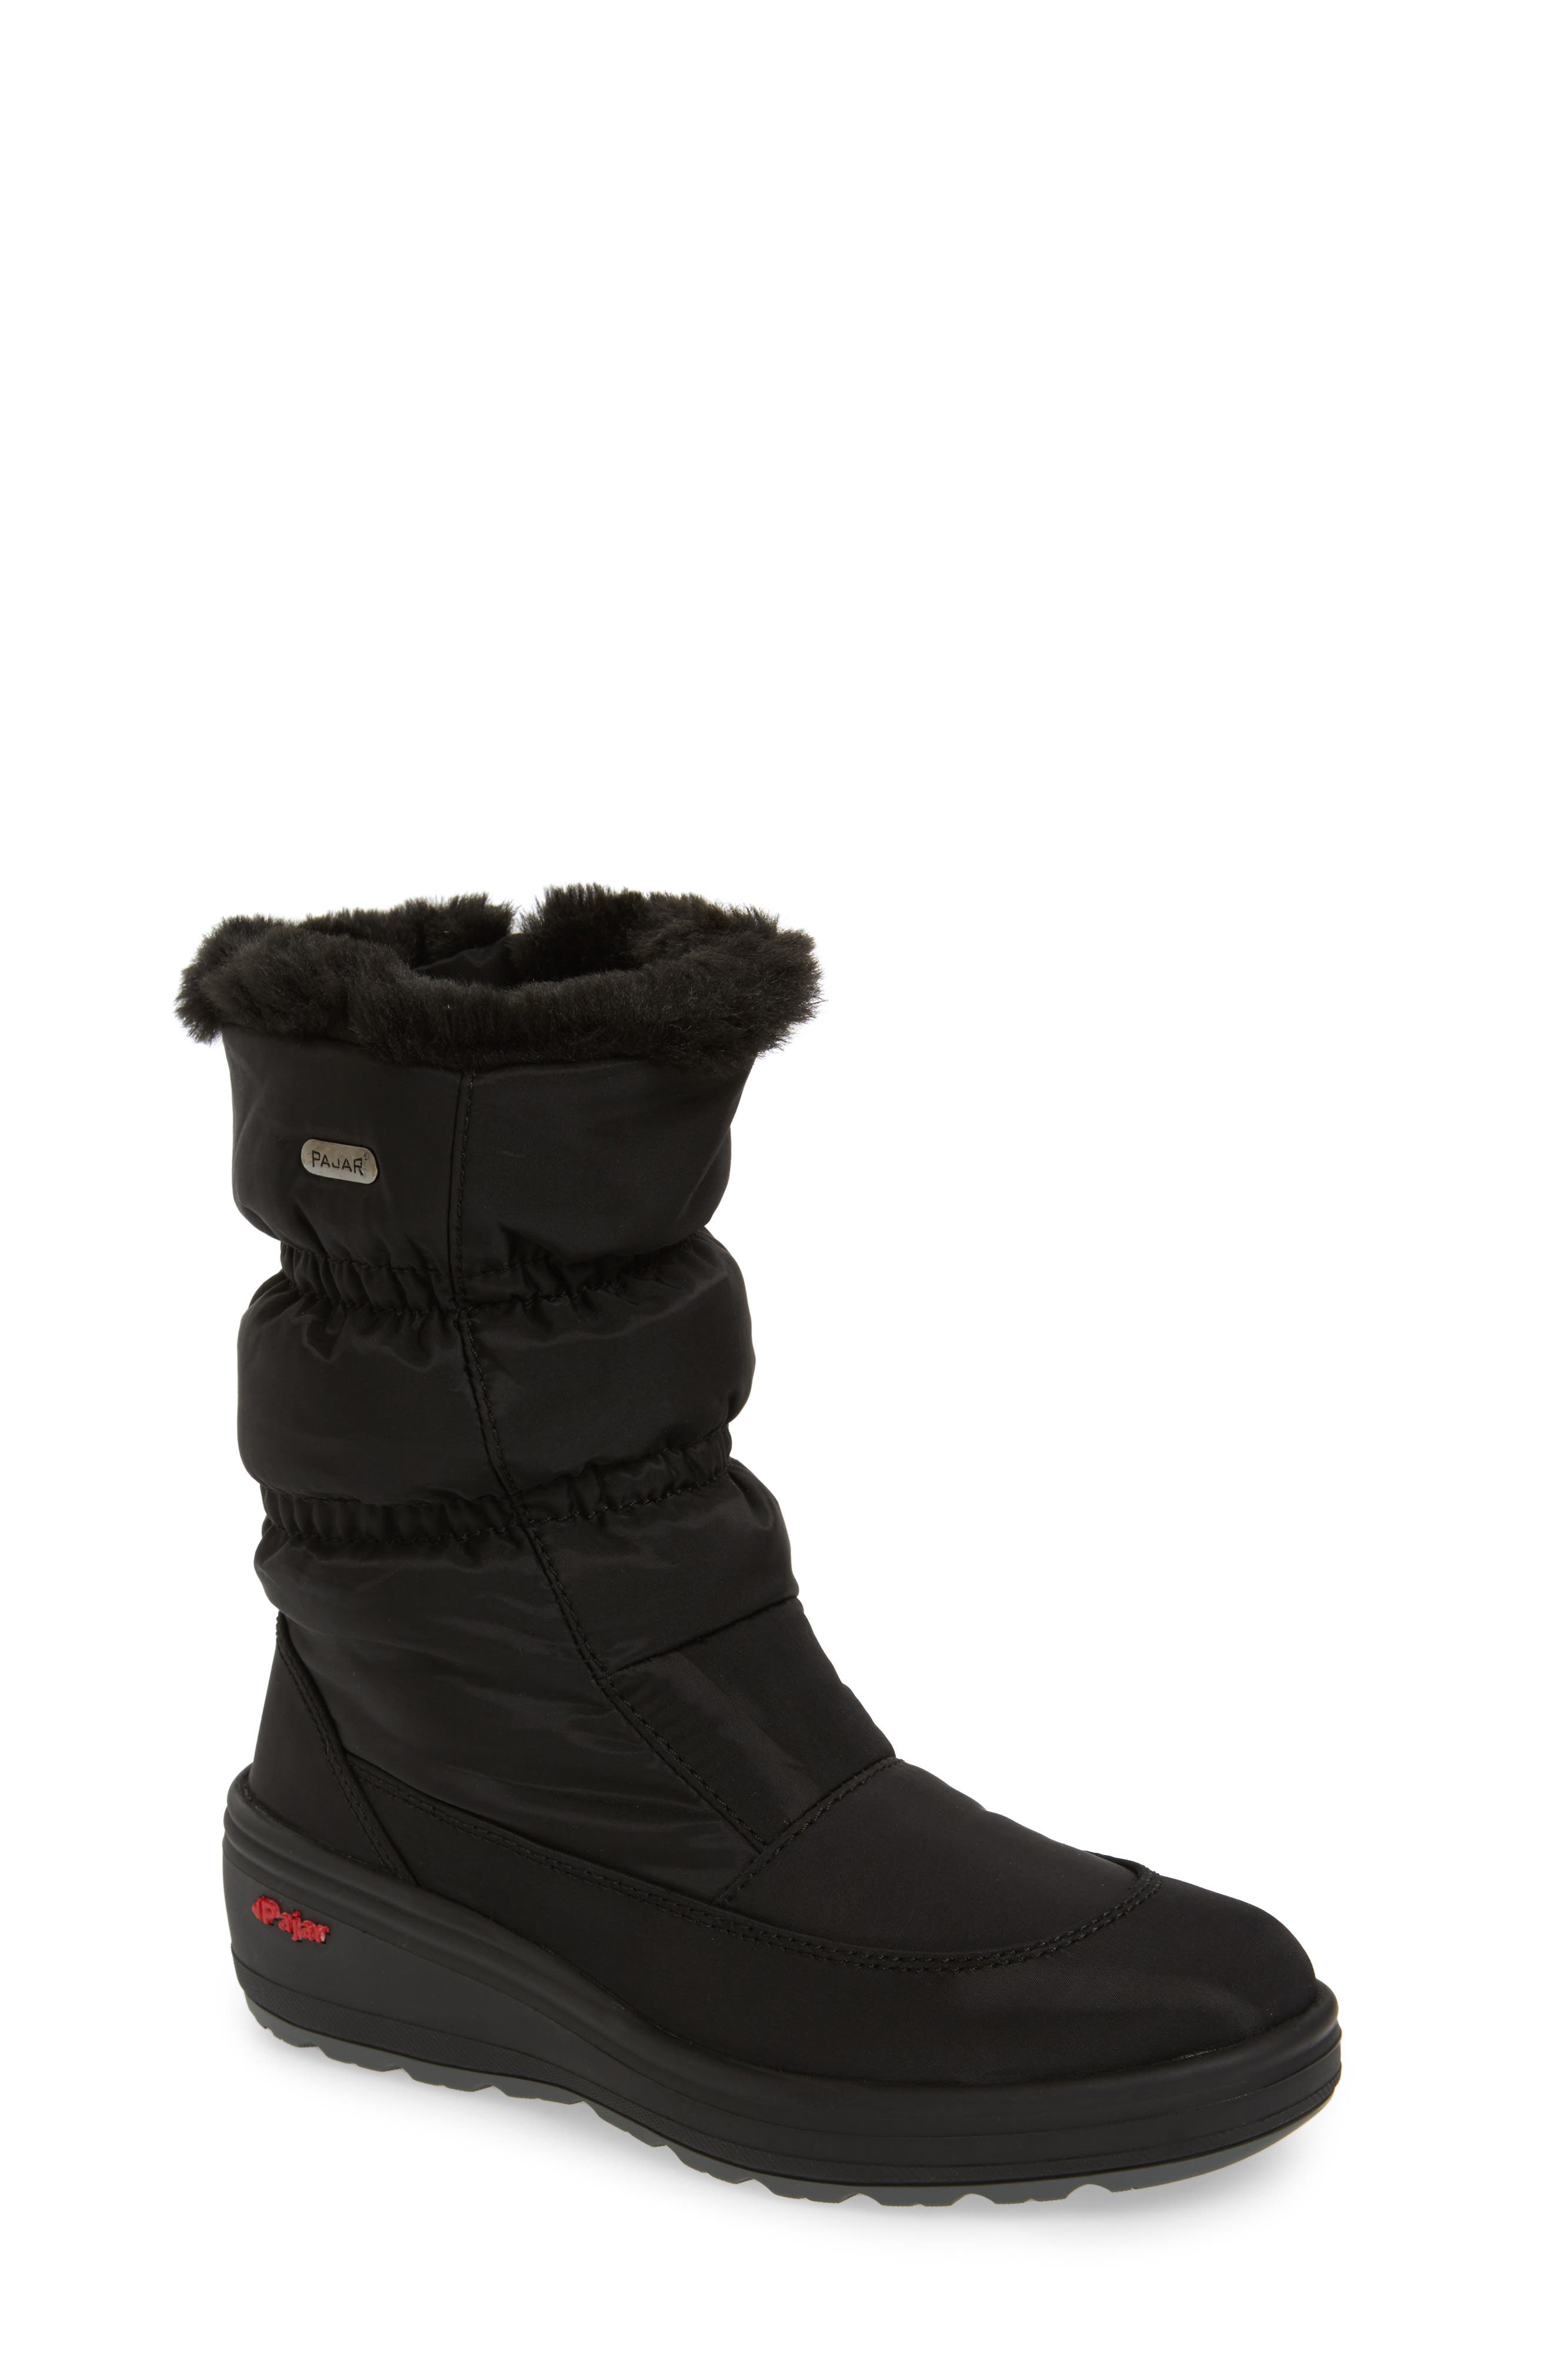 women's winter boots nordstrom rack